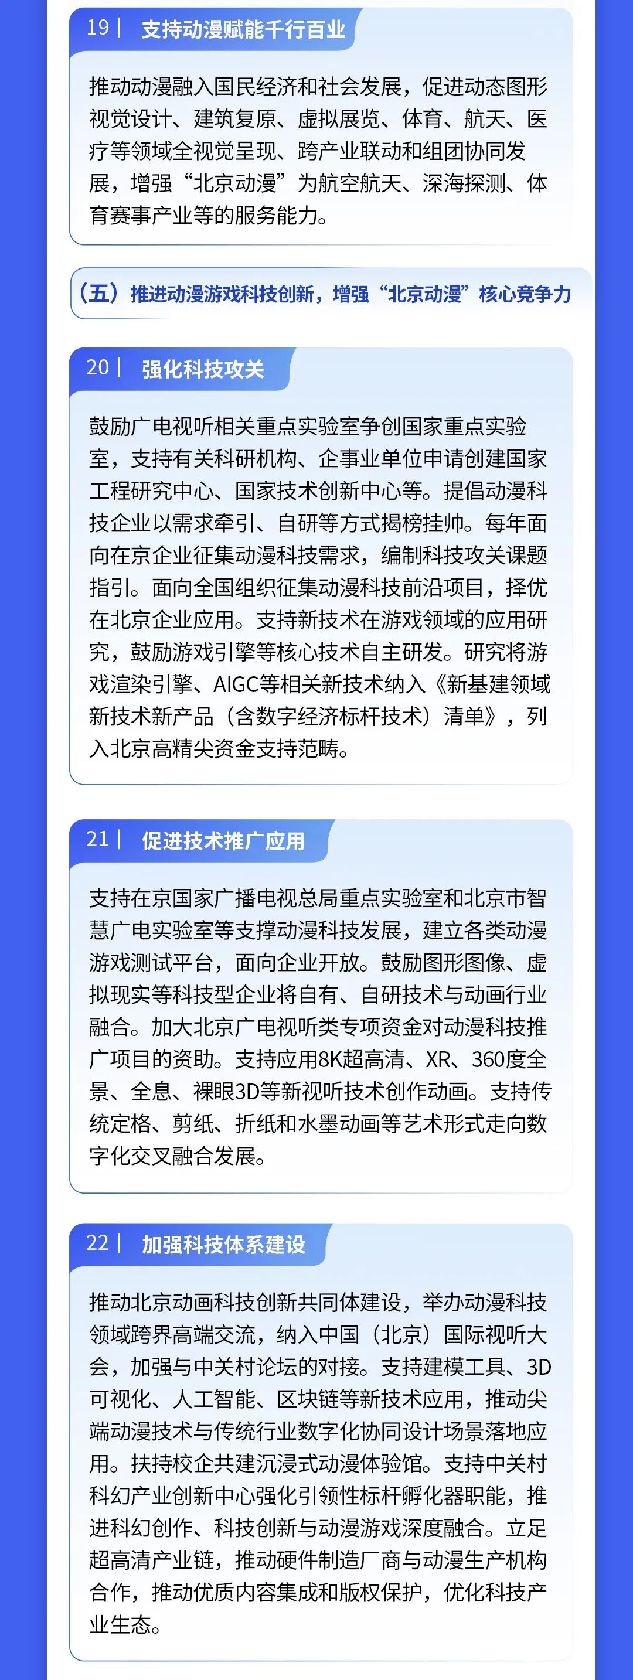 关于印发《关于推动北京动漫行业高质量发展的若干意见》的通知